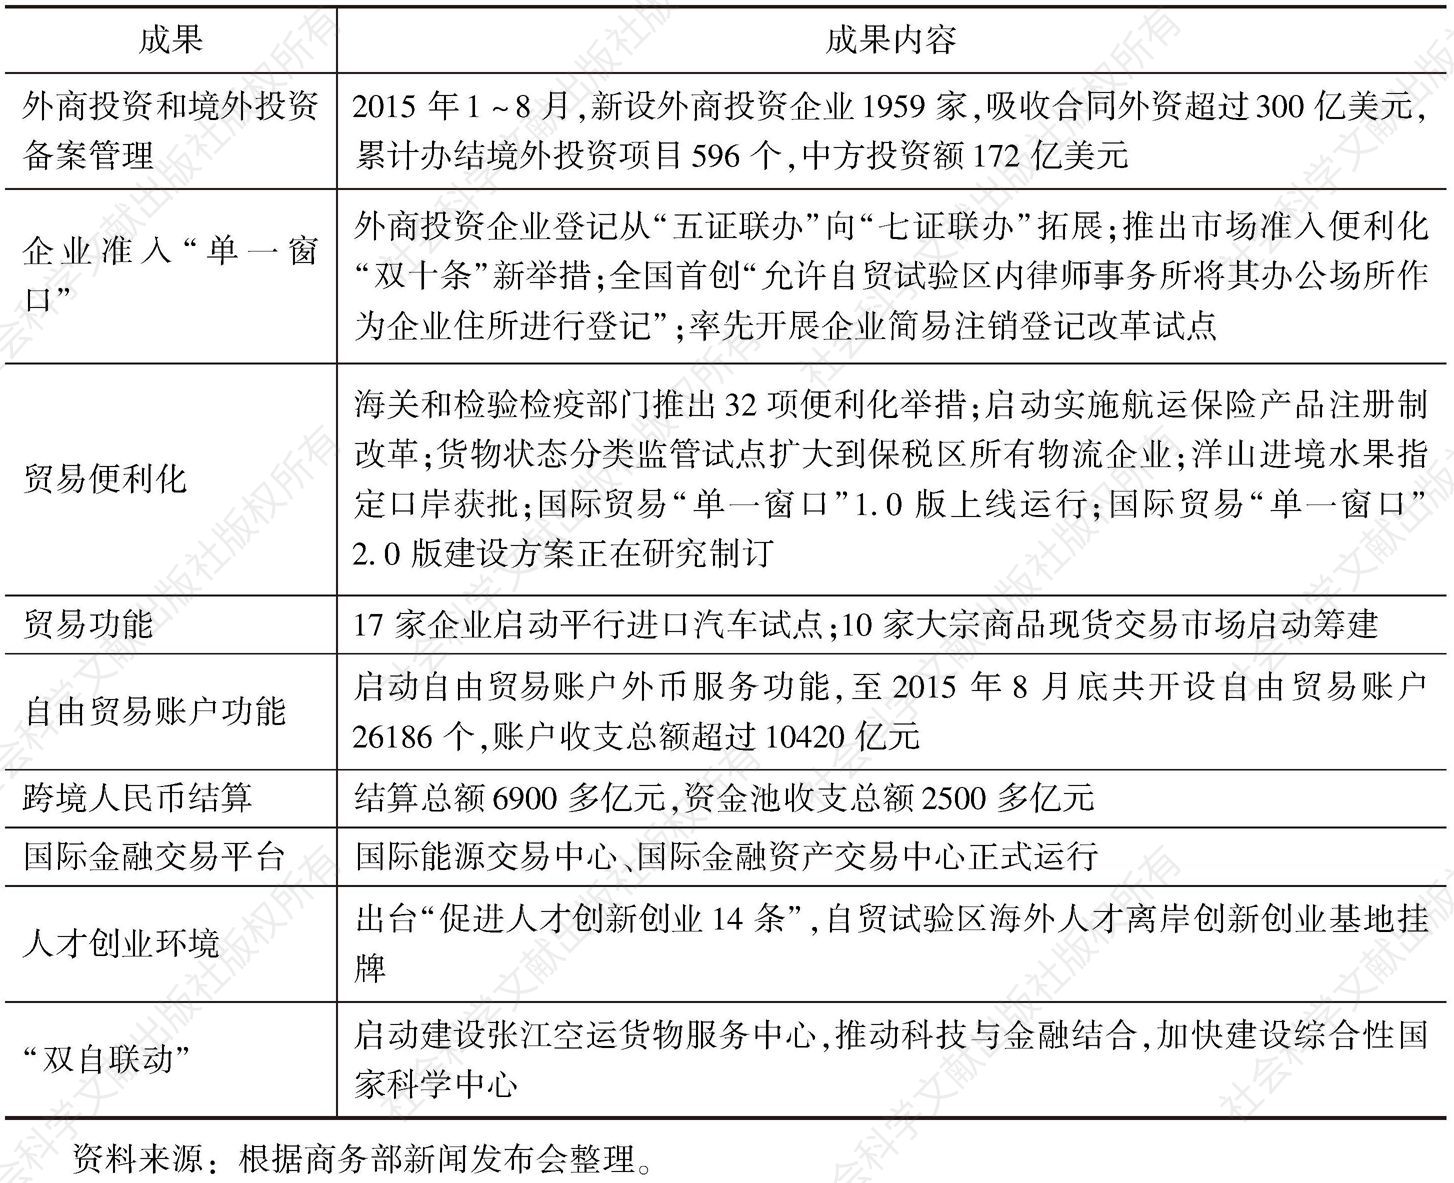 表1 上海自贸区制度和功能创新成果